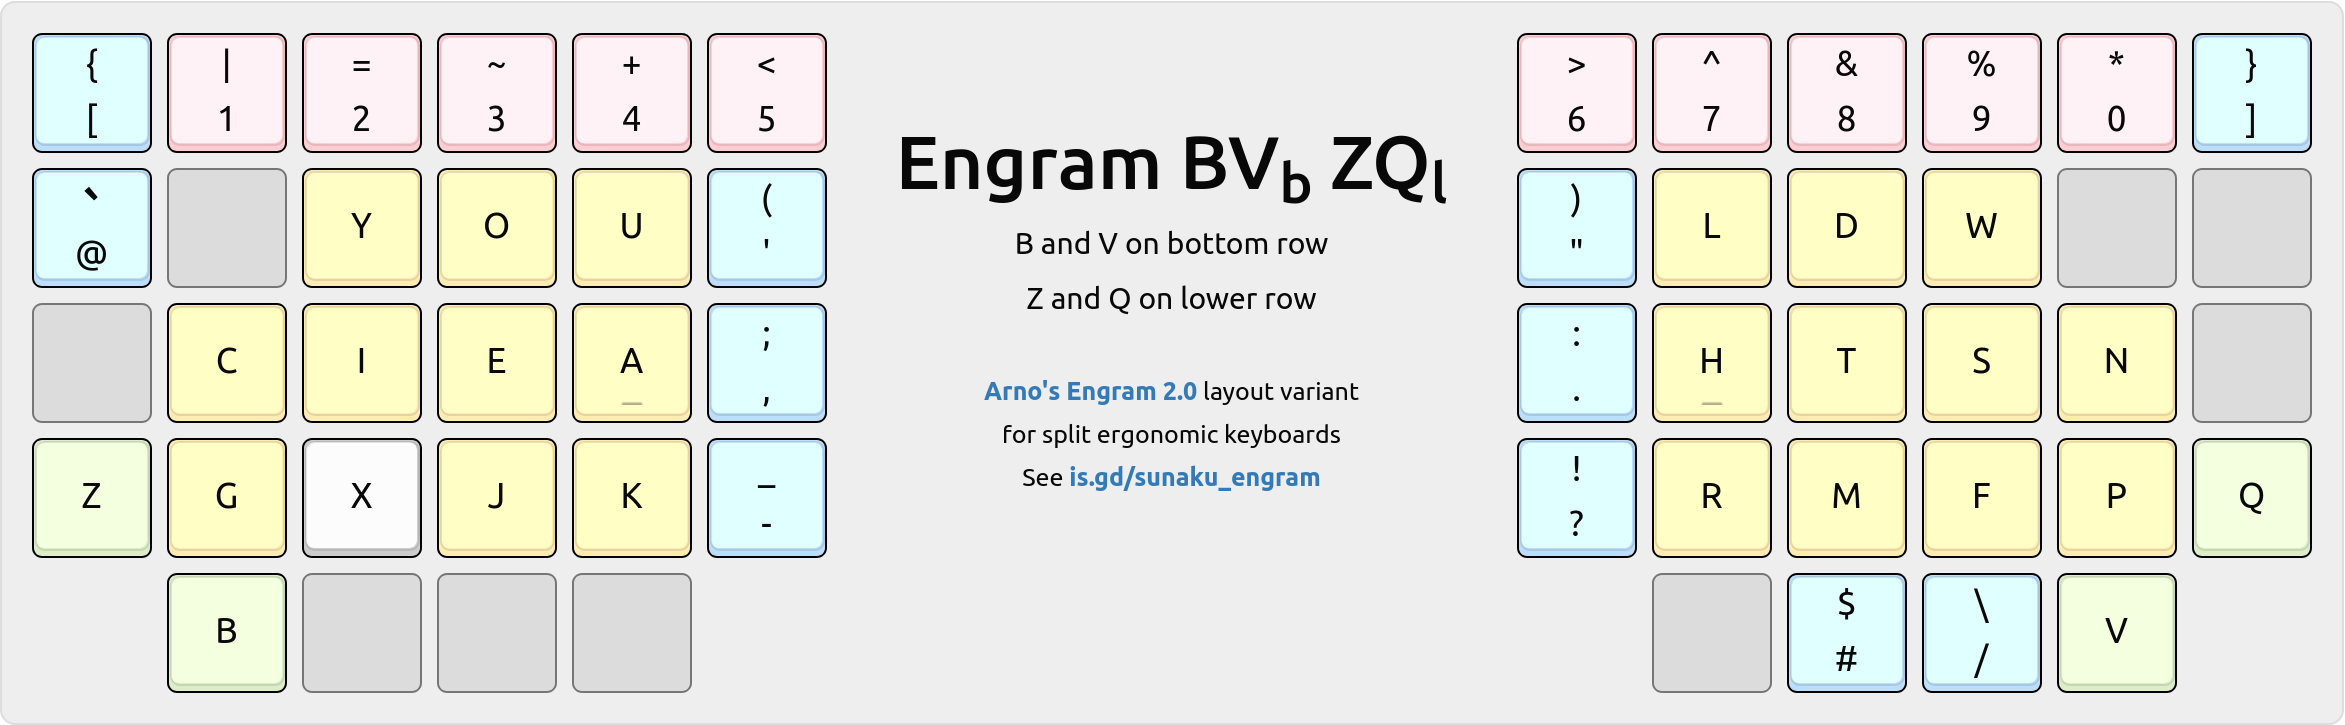 Engram-BVb-ZQl variant